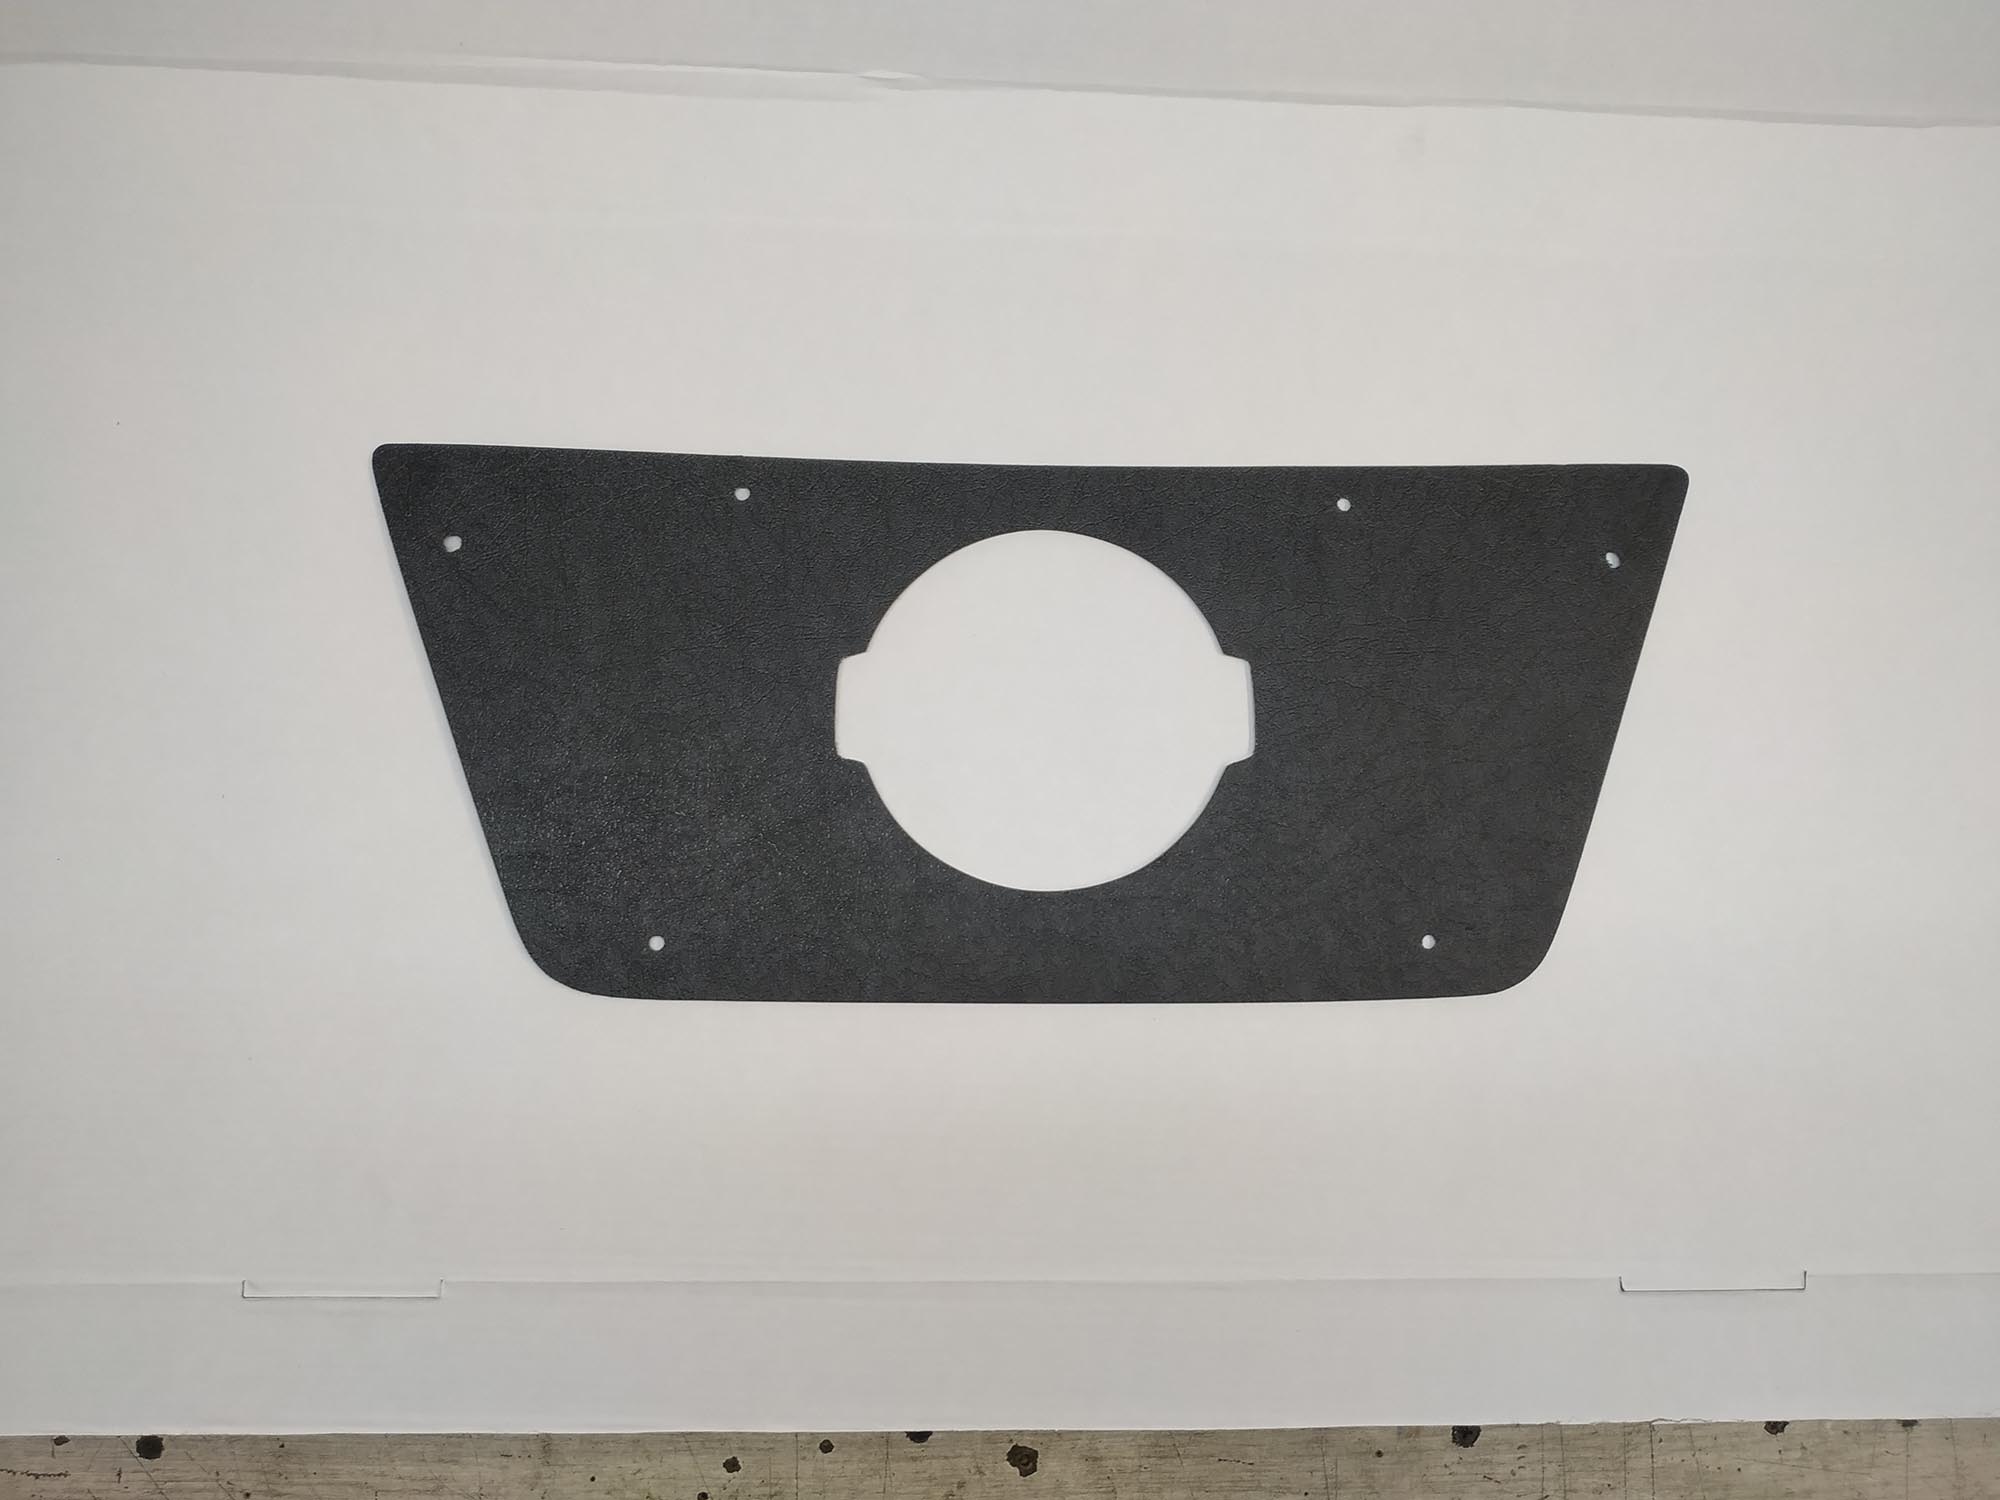 Зимняя защита радиатора ProtectGrille верхняя для Nissan Terrano (2014-н.в. Черная)